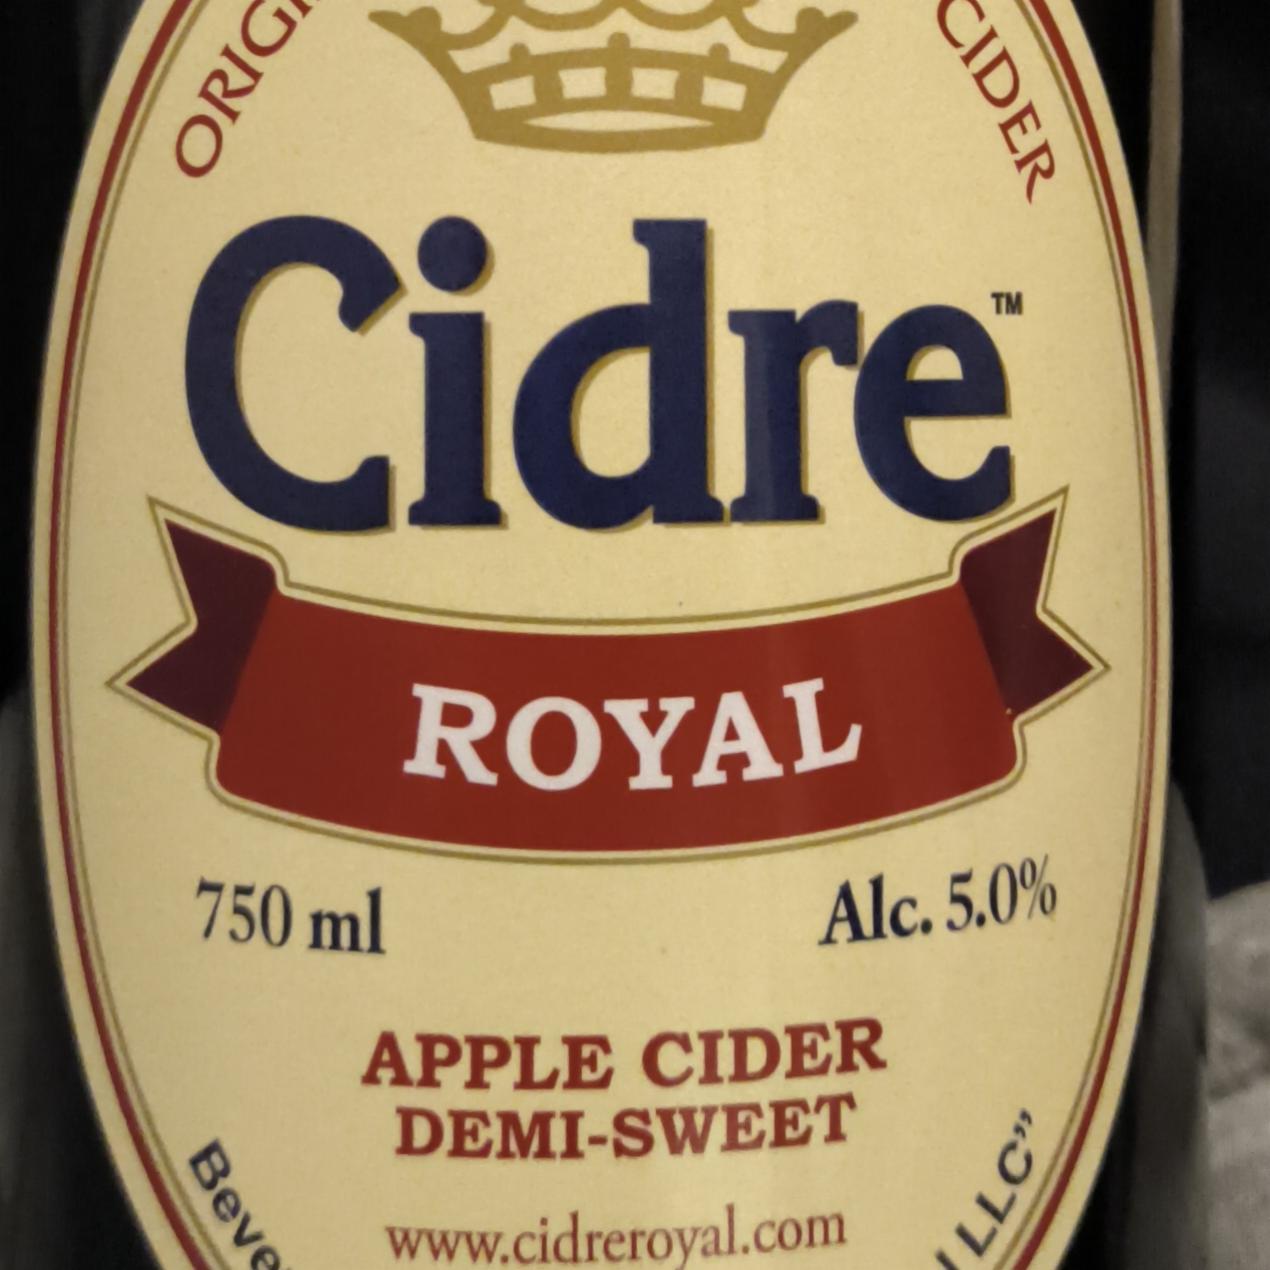 Фото - Яблочный сидр Royal demi-sweet Cidre